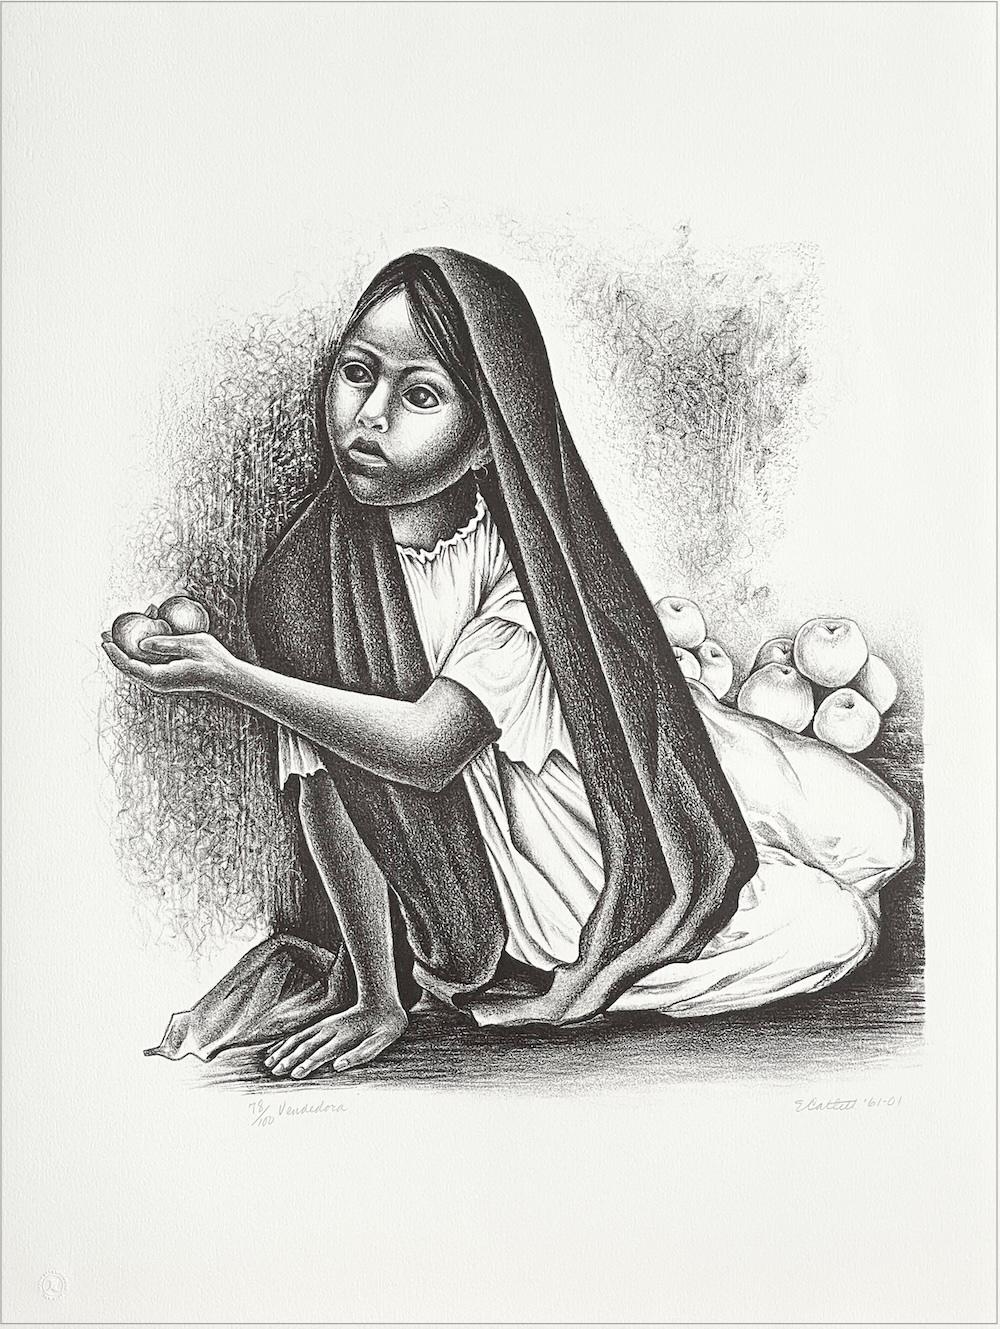 Elizabeth Catlett Portrait Print – Signierte Lithographie von VENDEDORA, Porträt eines sitzenden jungen Mädchens, mexikanischer Obstverkäufer